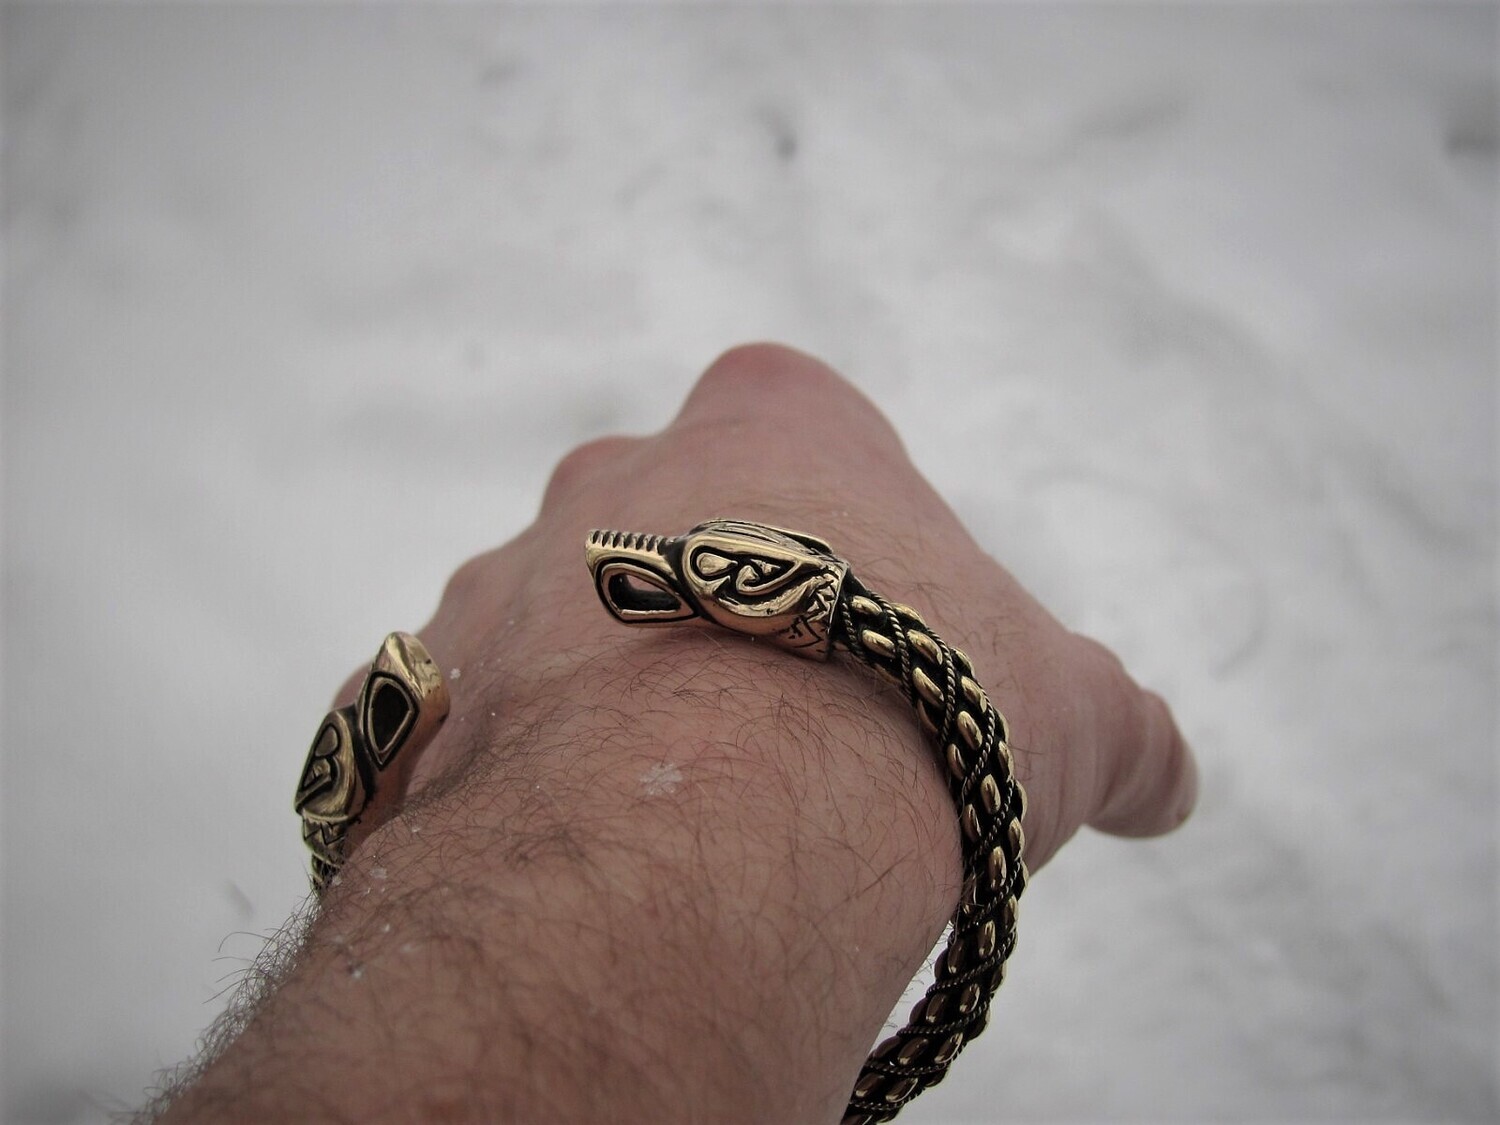 Handmade Denmark Type Bracelet / Oath Ring with Odin's Wolves, Brass